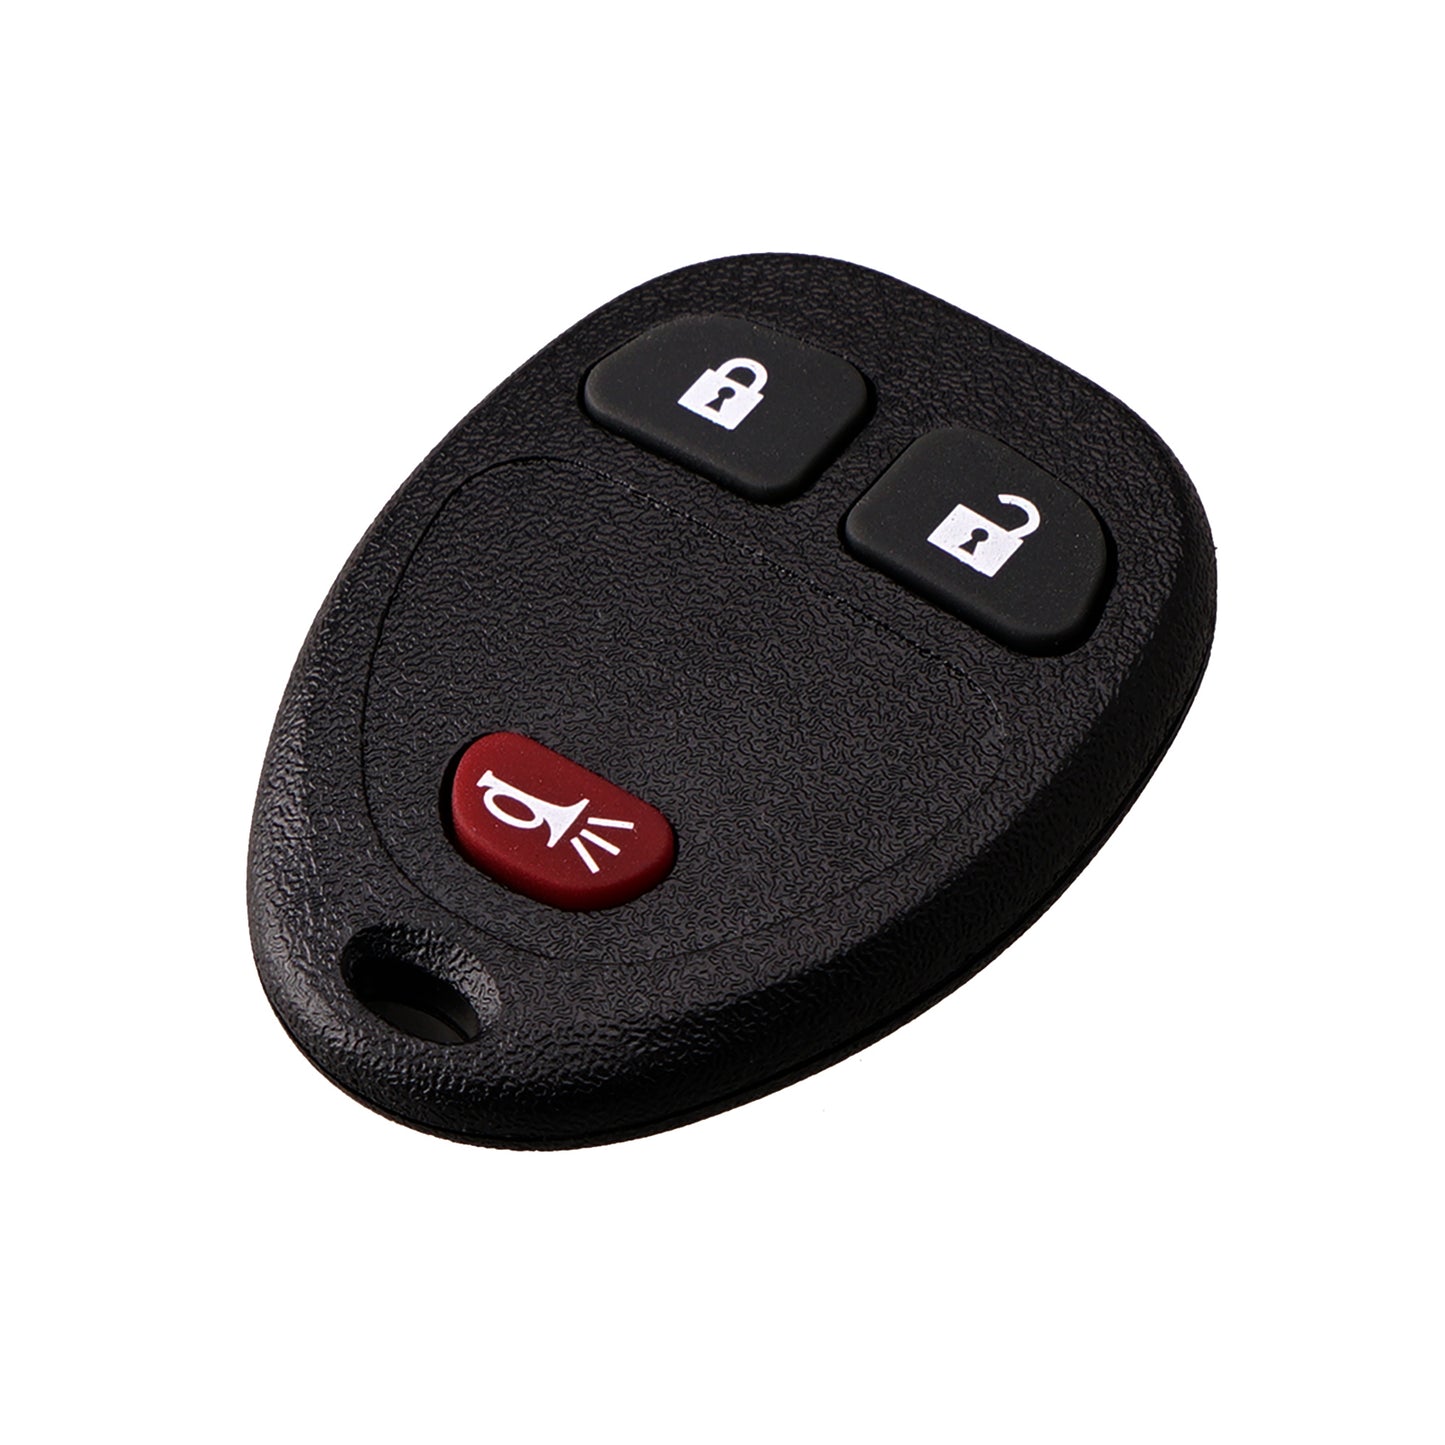 3 Buttons 315MHz Keyless Entry Fob Remote Car Key For 2005 - 2011 Chevy HHR Uplander Buick Terraza Saturn Relay Pontiac Montana FCC ID: KOBGT04A SKU : J015